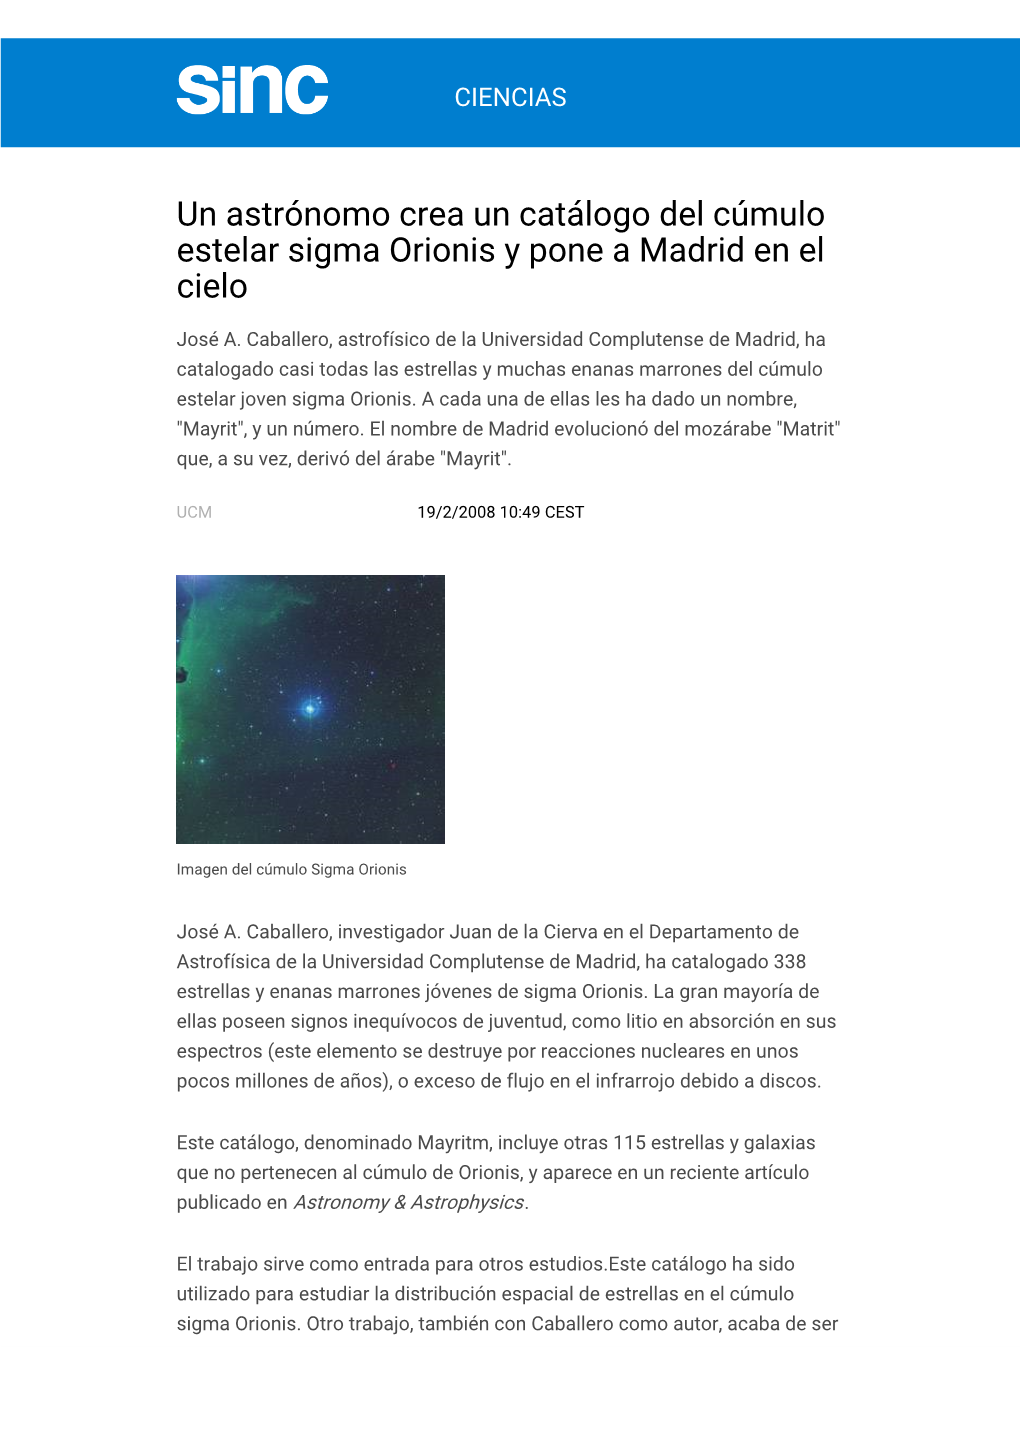 Un Astrónomo Crea Un Catálogo Del Cúmulo Estelar Sigma Orionis Y Pone a Madrid En El Cielo